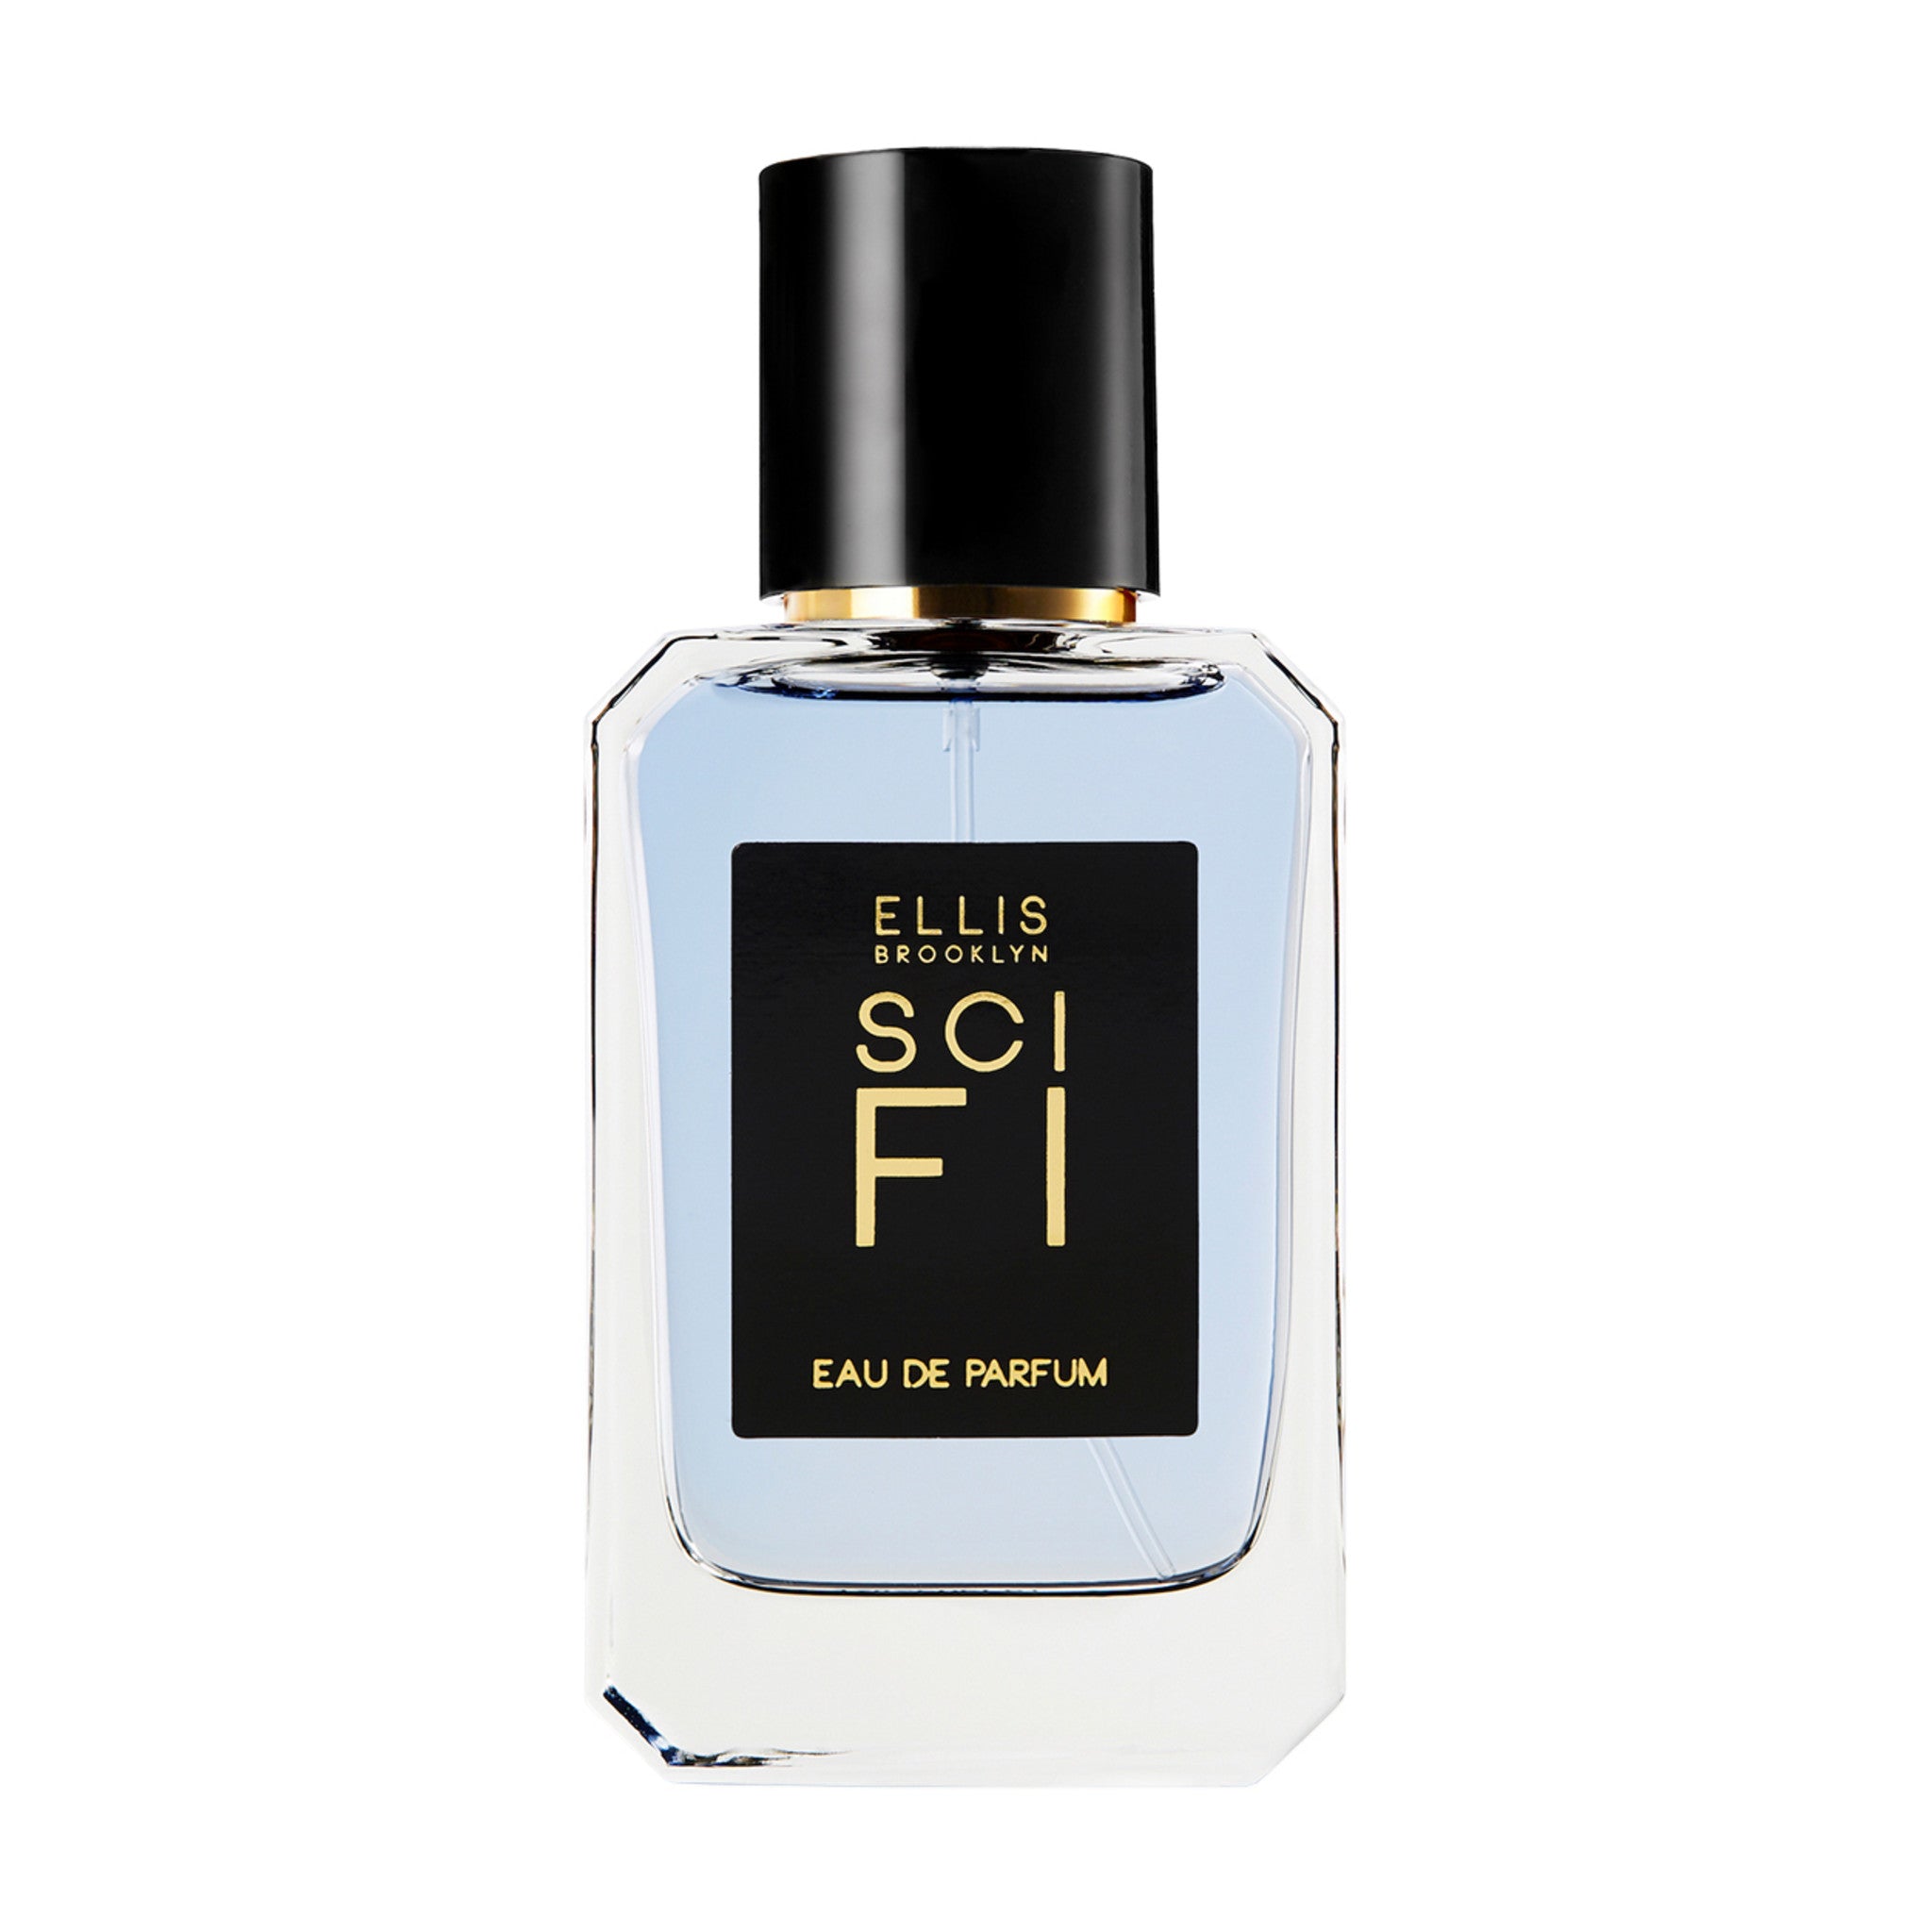 Ellis Brooklyn Sci Fi Eau de Parfum Size variant: 1.7 oz main image.